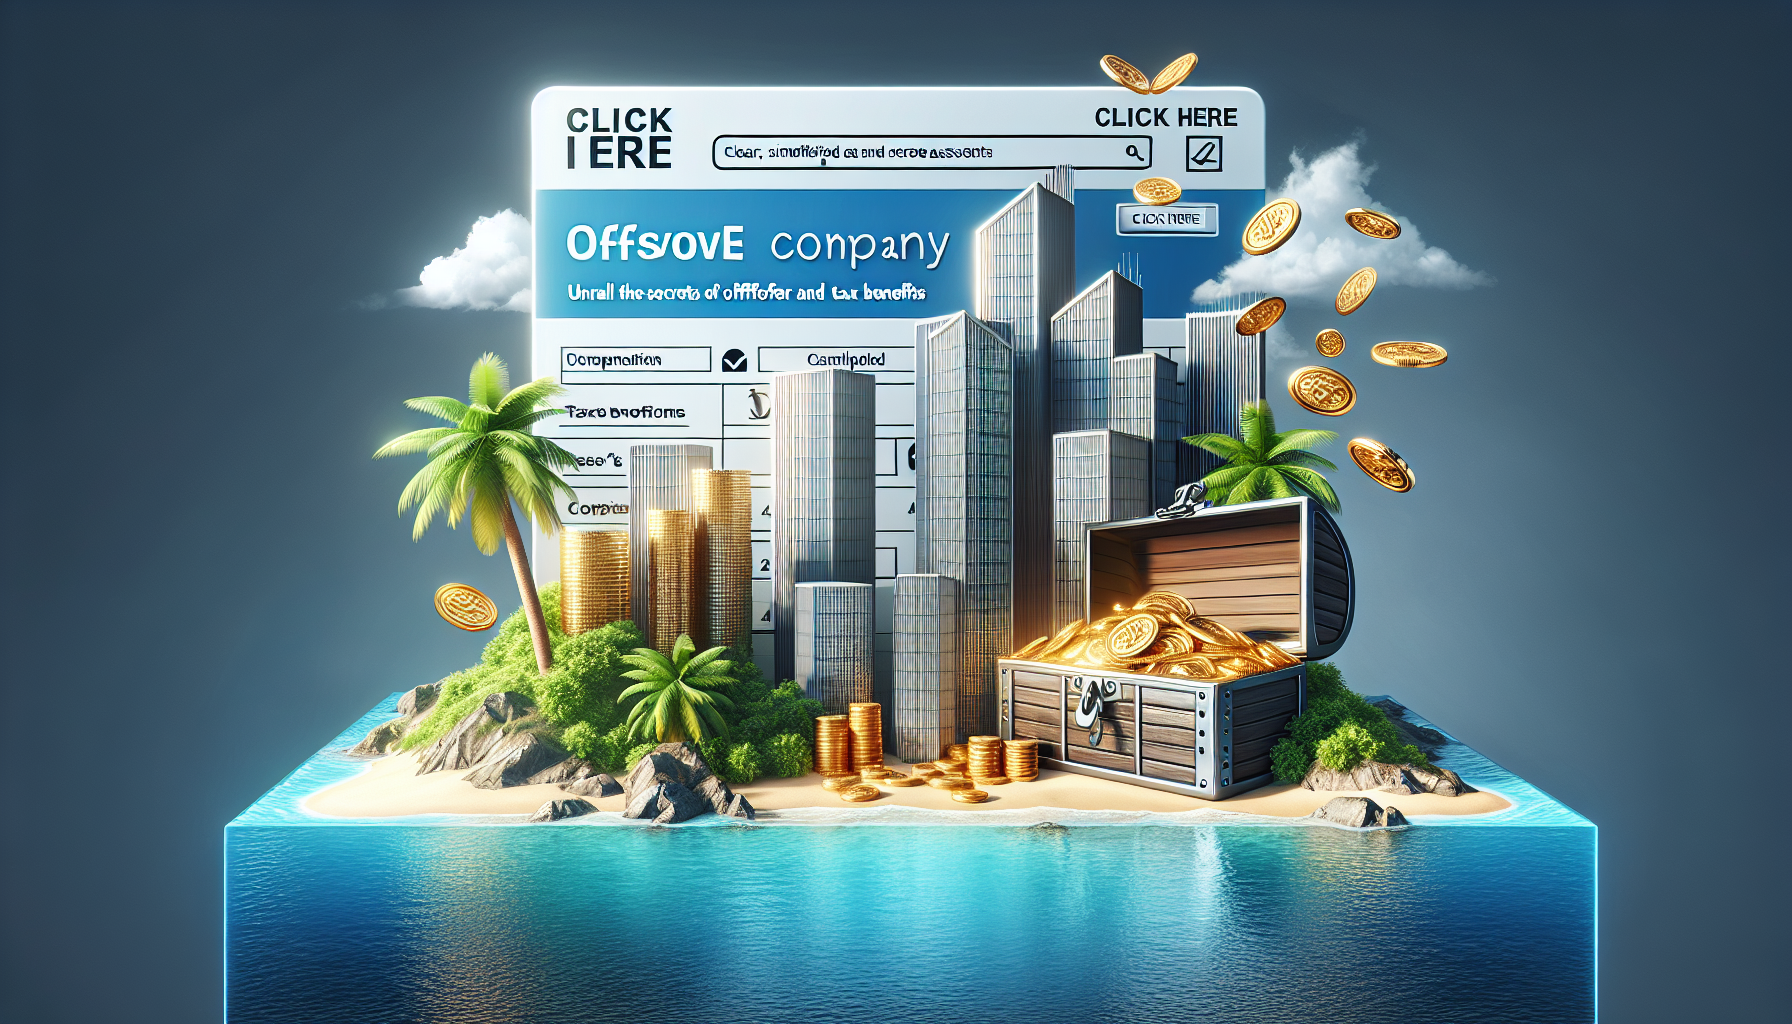 découvrez la fiscalité d'une société offshore et ses avantages dans cet article sur la société offshore.